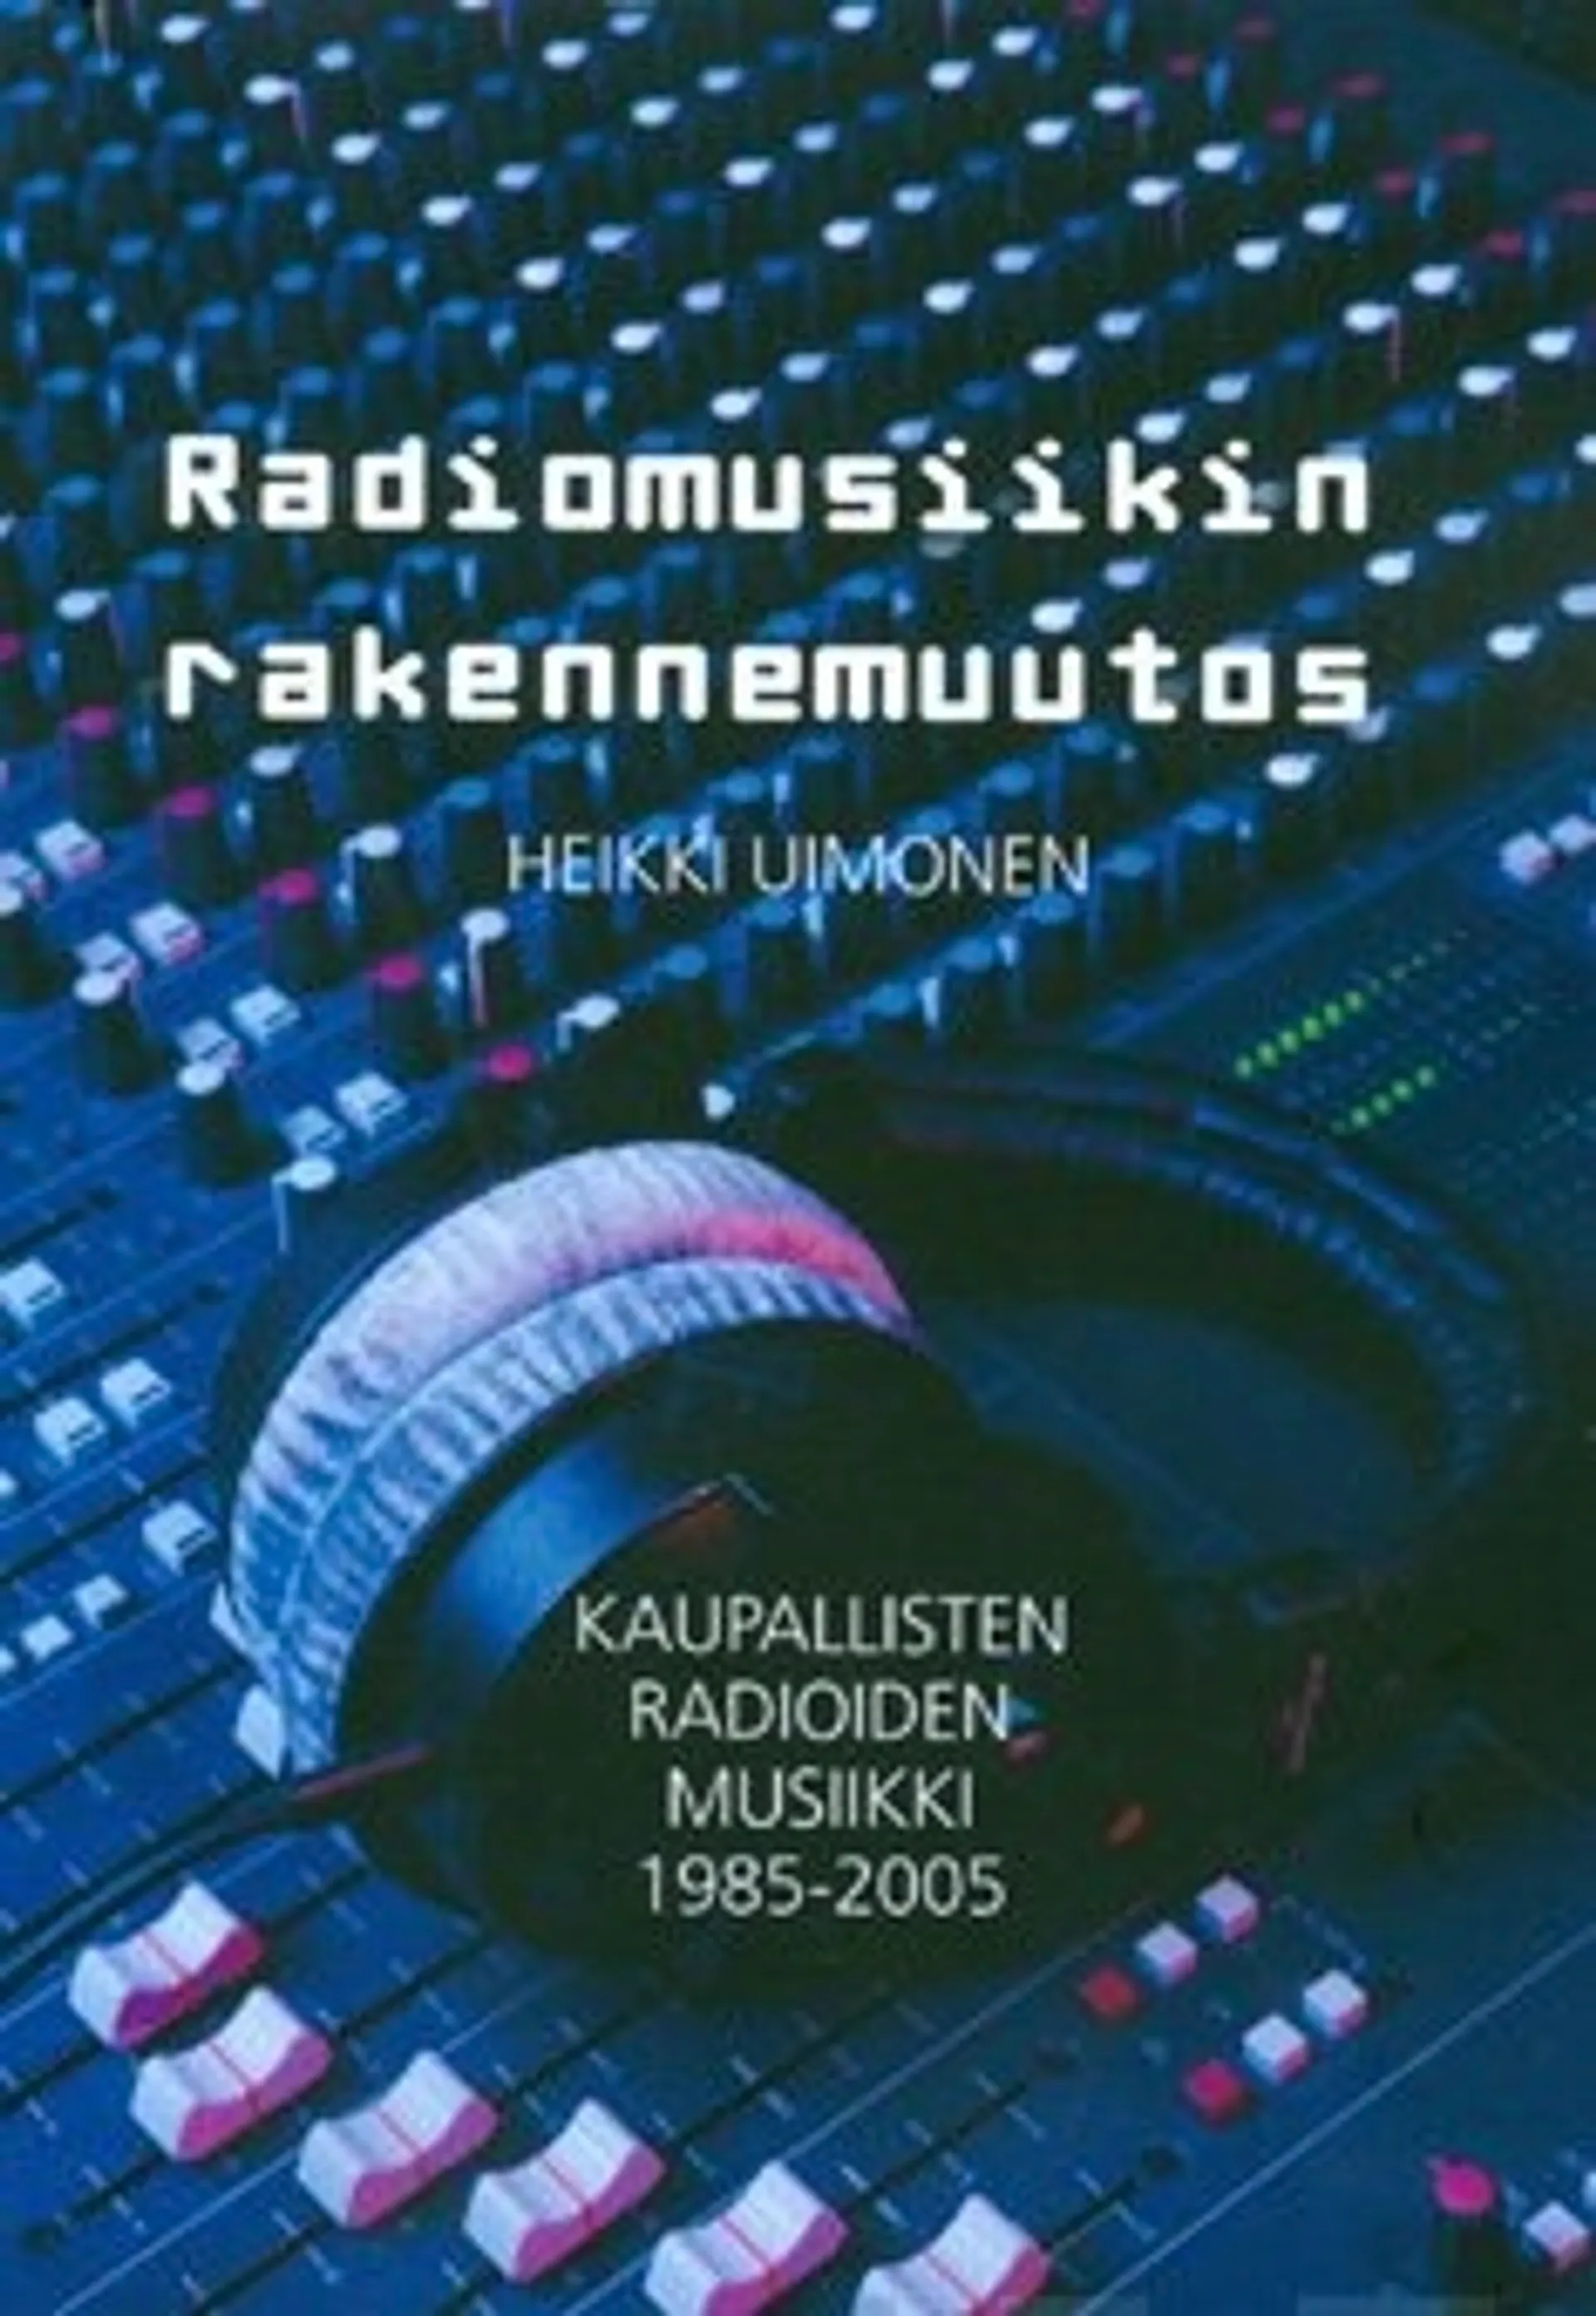 Radiomusiikin rakennemuutos